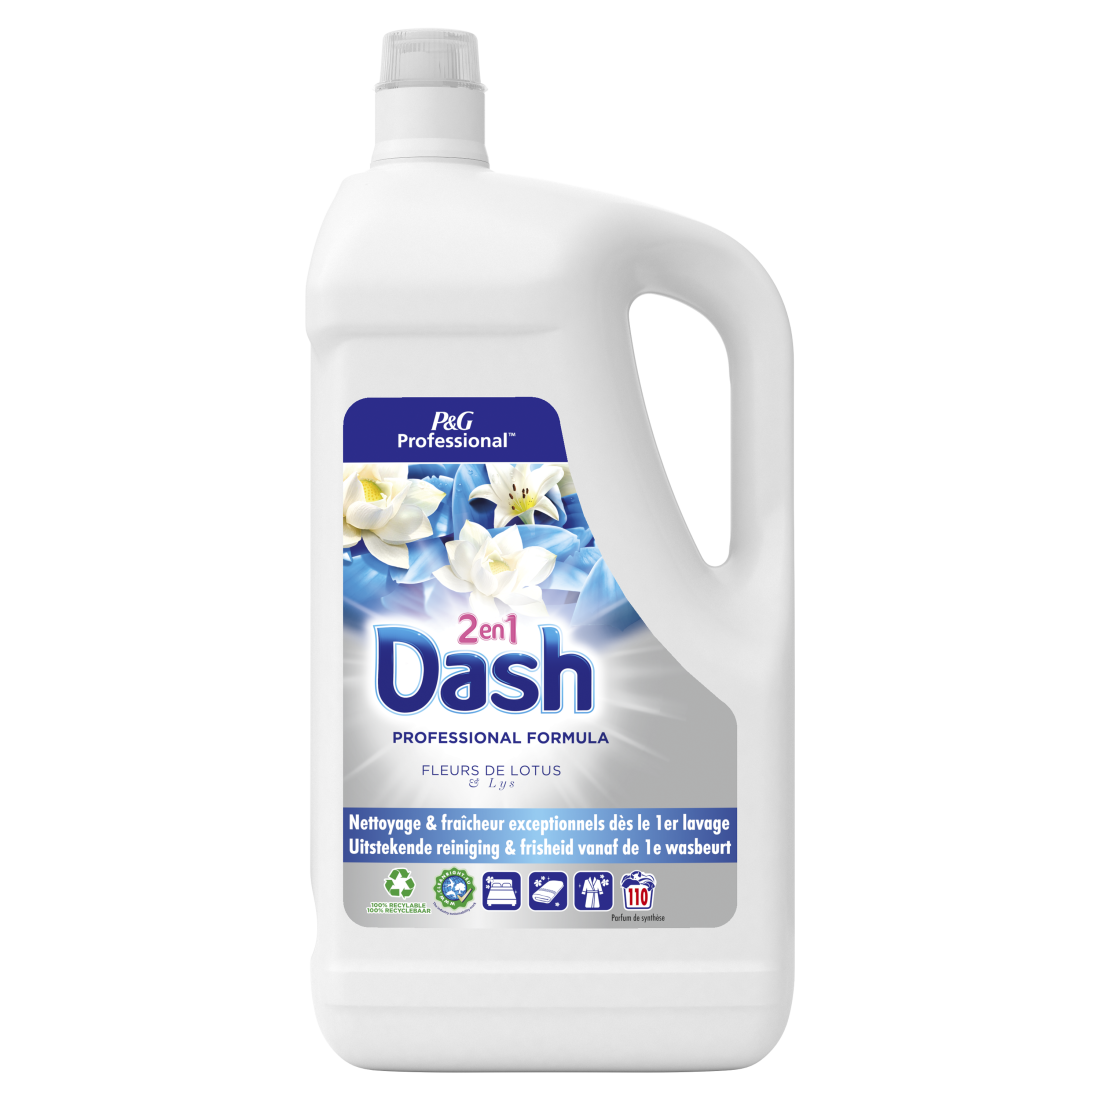 Dash Professional - 2en1 Liquide Fleurs De Lotus Et Lys d'eau 110